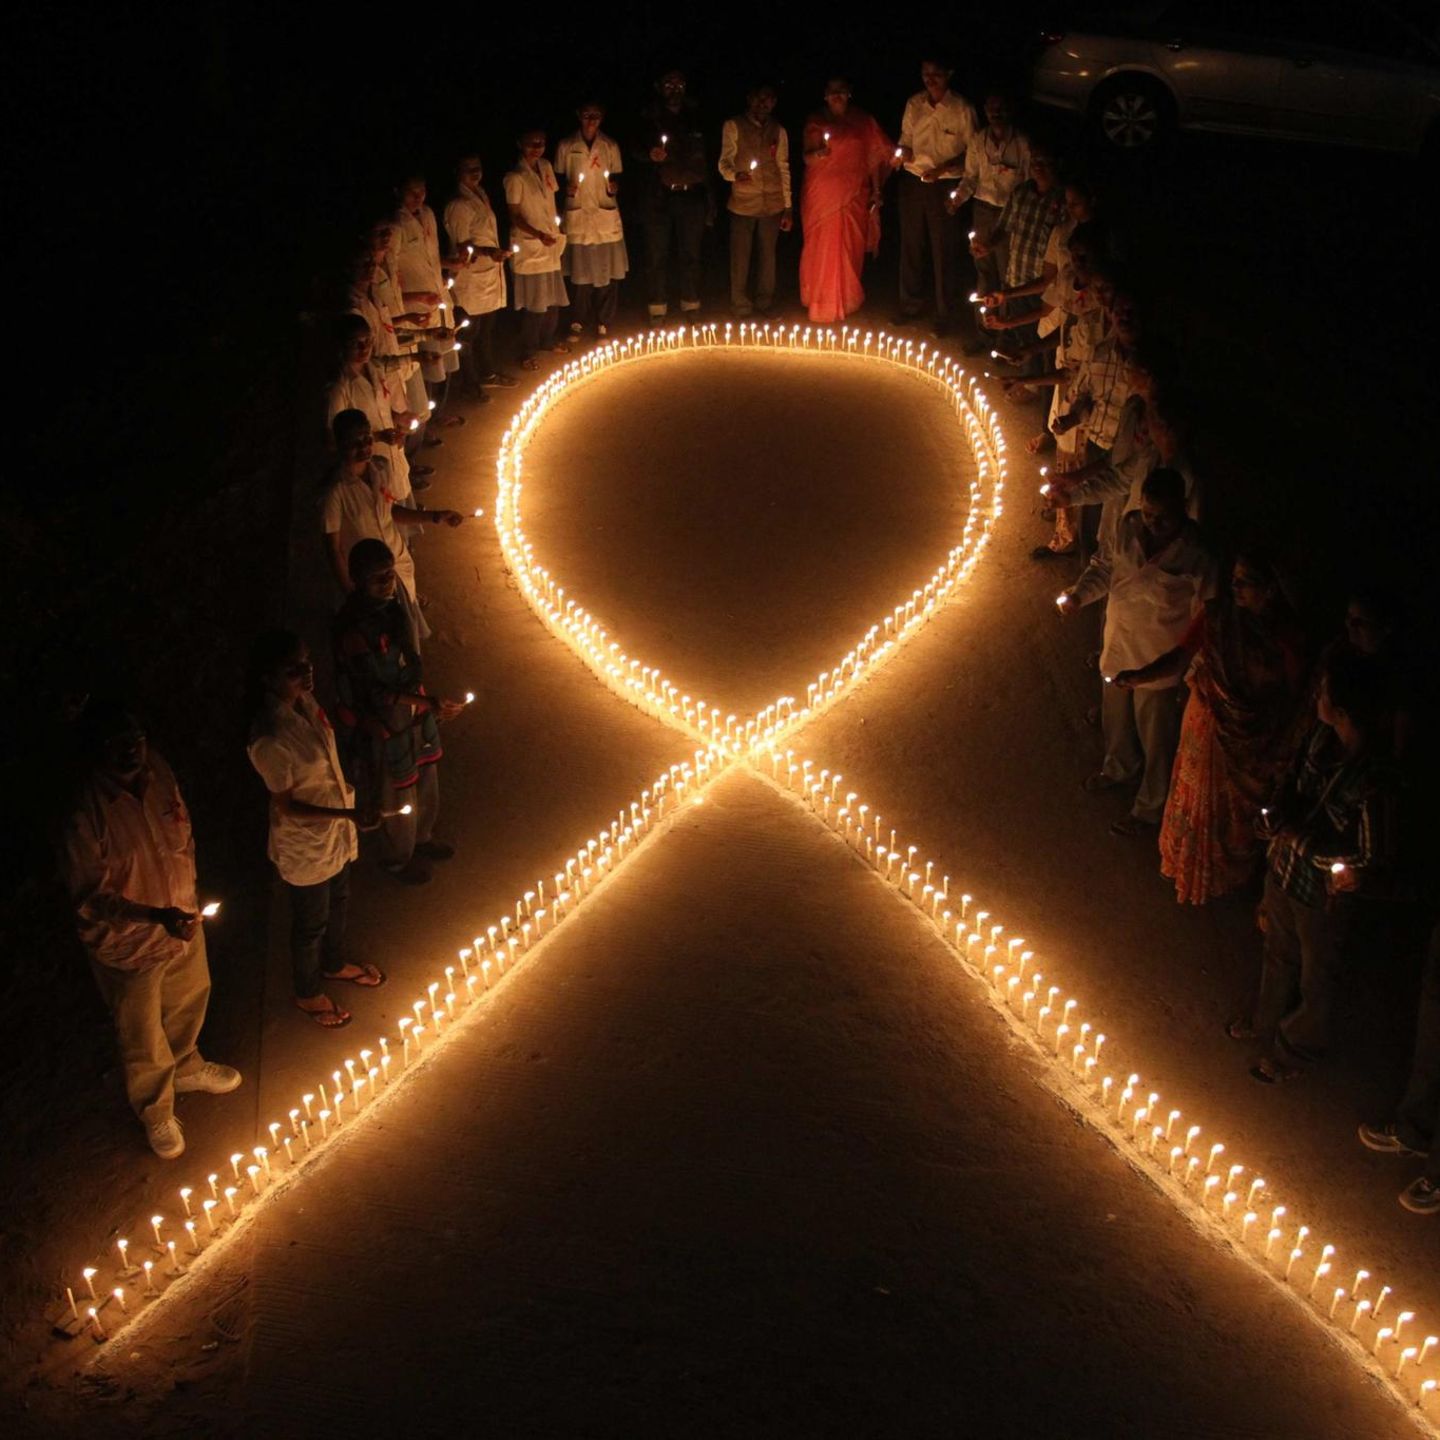 Solidarität mit HIV-Infizierten und Aids-Erkrankten: Die 1991 kreierte "Rote Schleife" ist ein weltweites Zeichen, hier der Welt-Aids-Tag in Indien